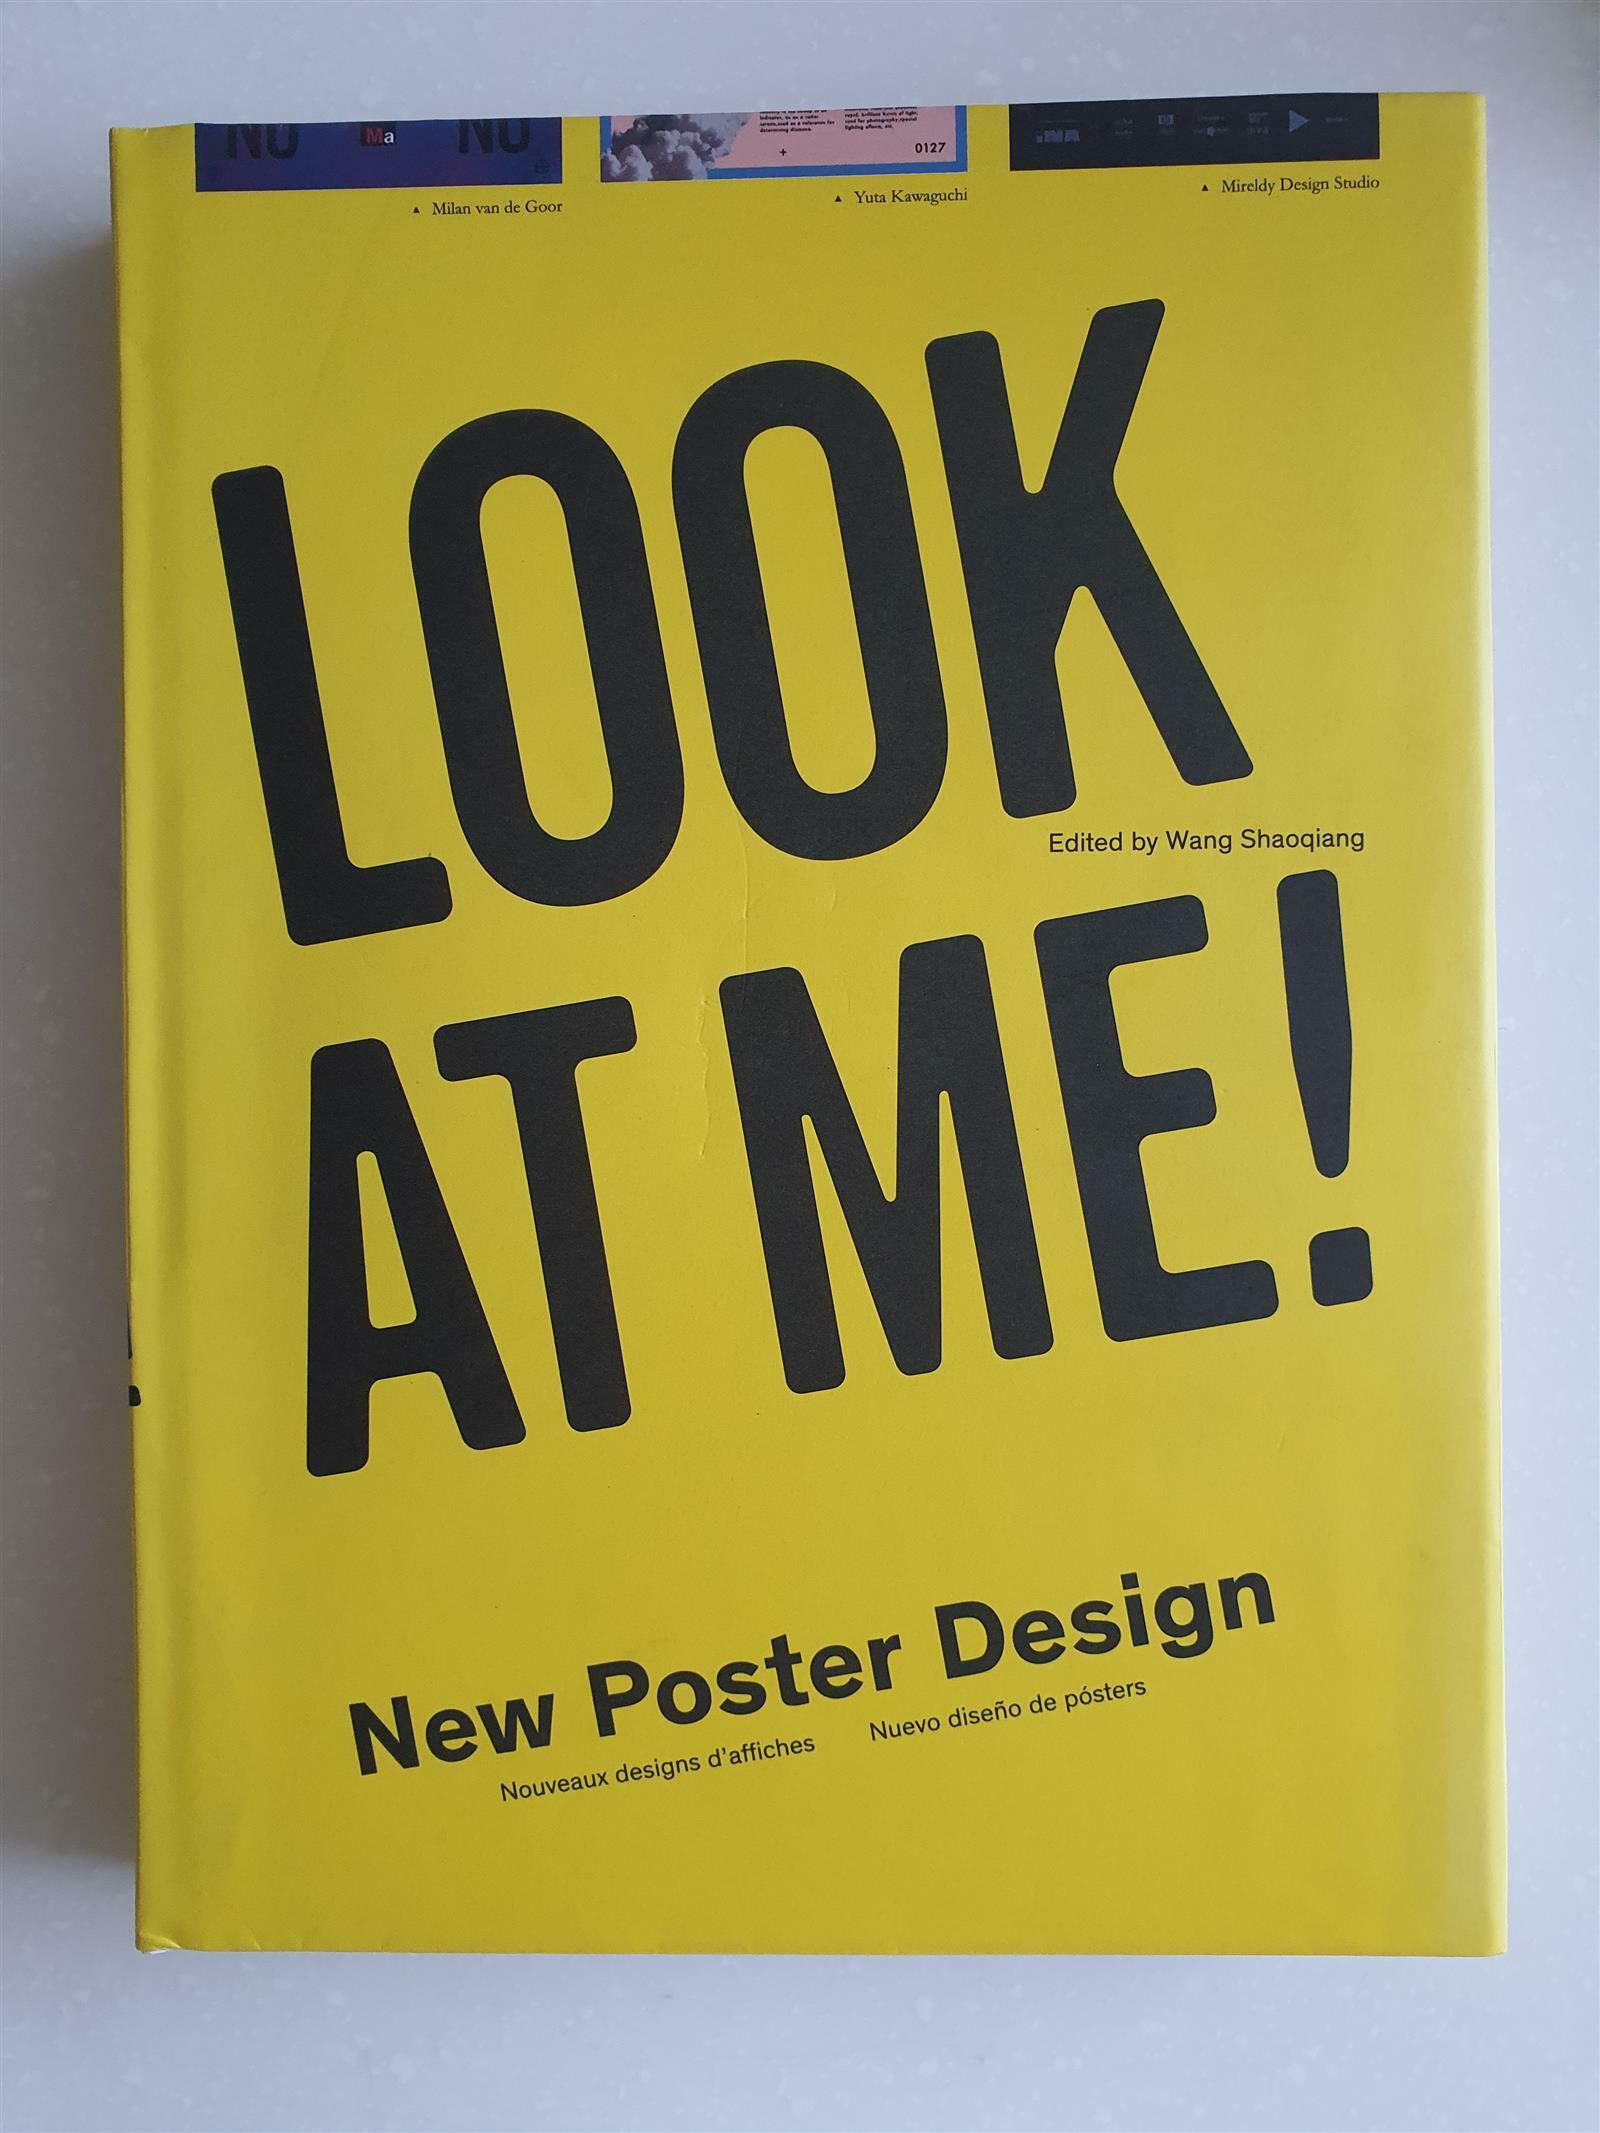 [중고] Look At Me! - New Poster Design (Hardcover)